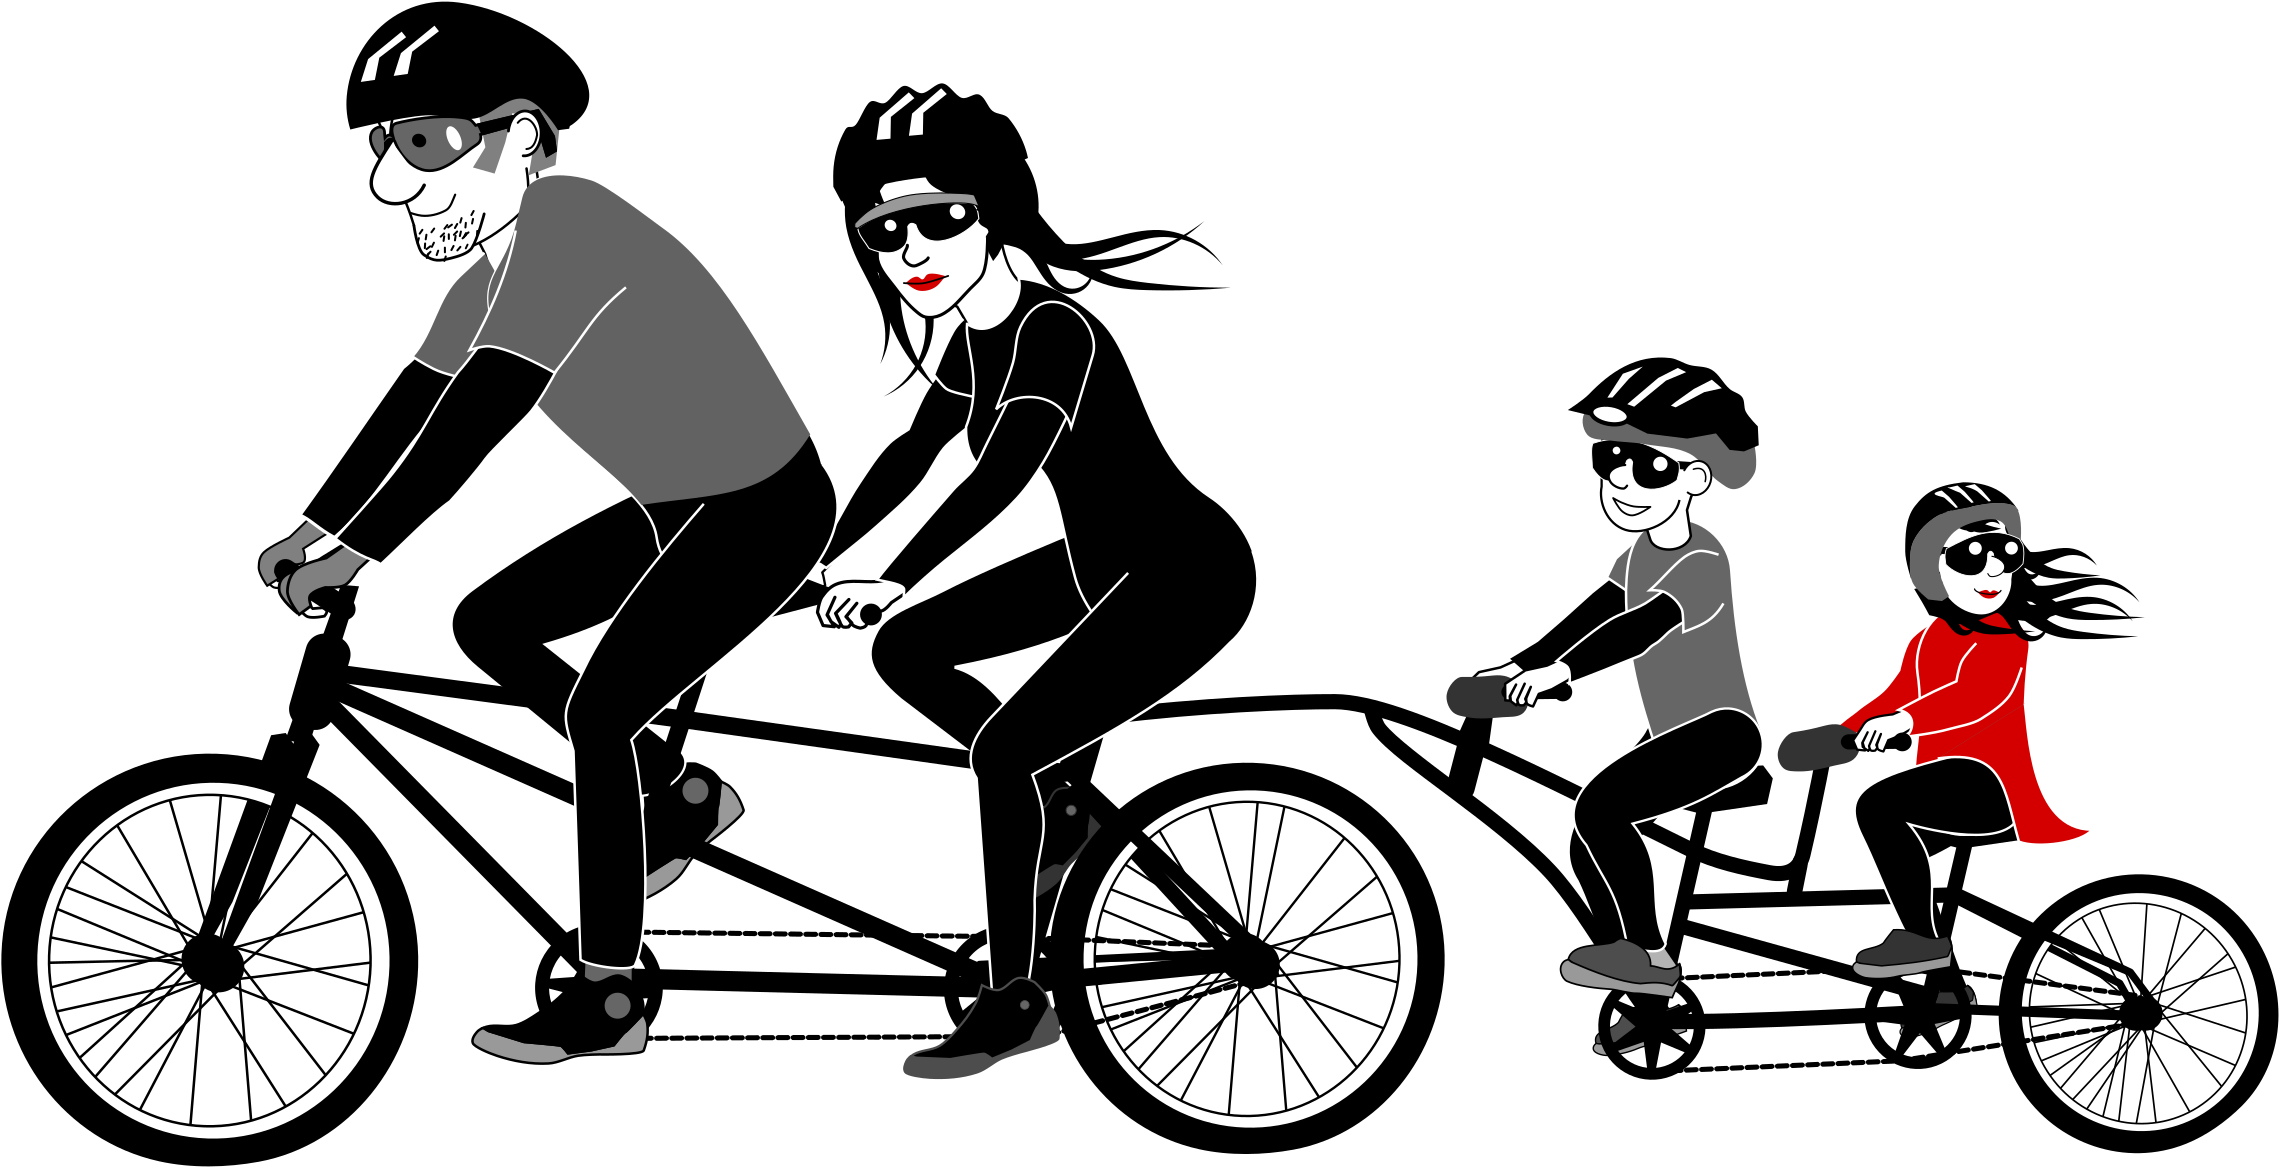 Family Bike Ride Illustration